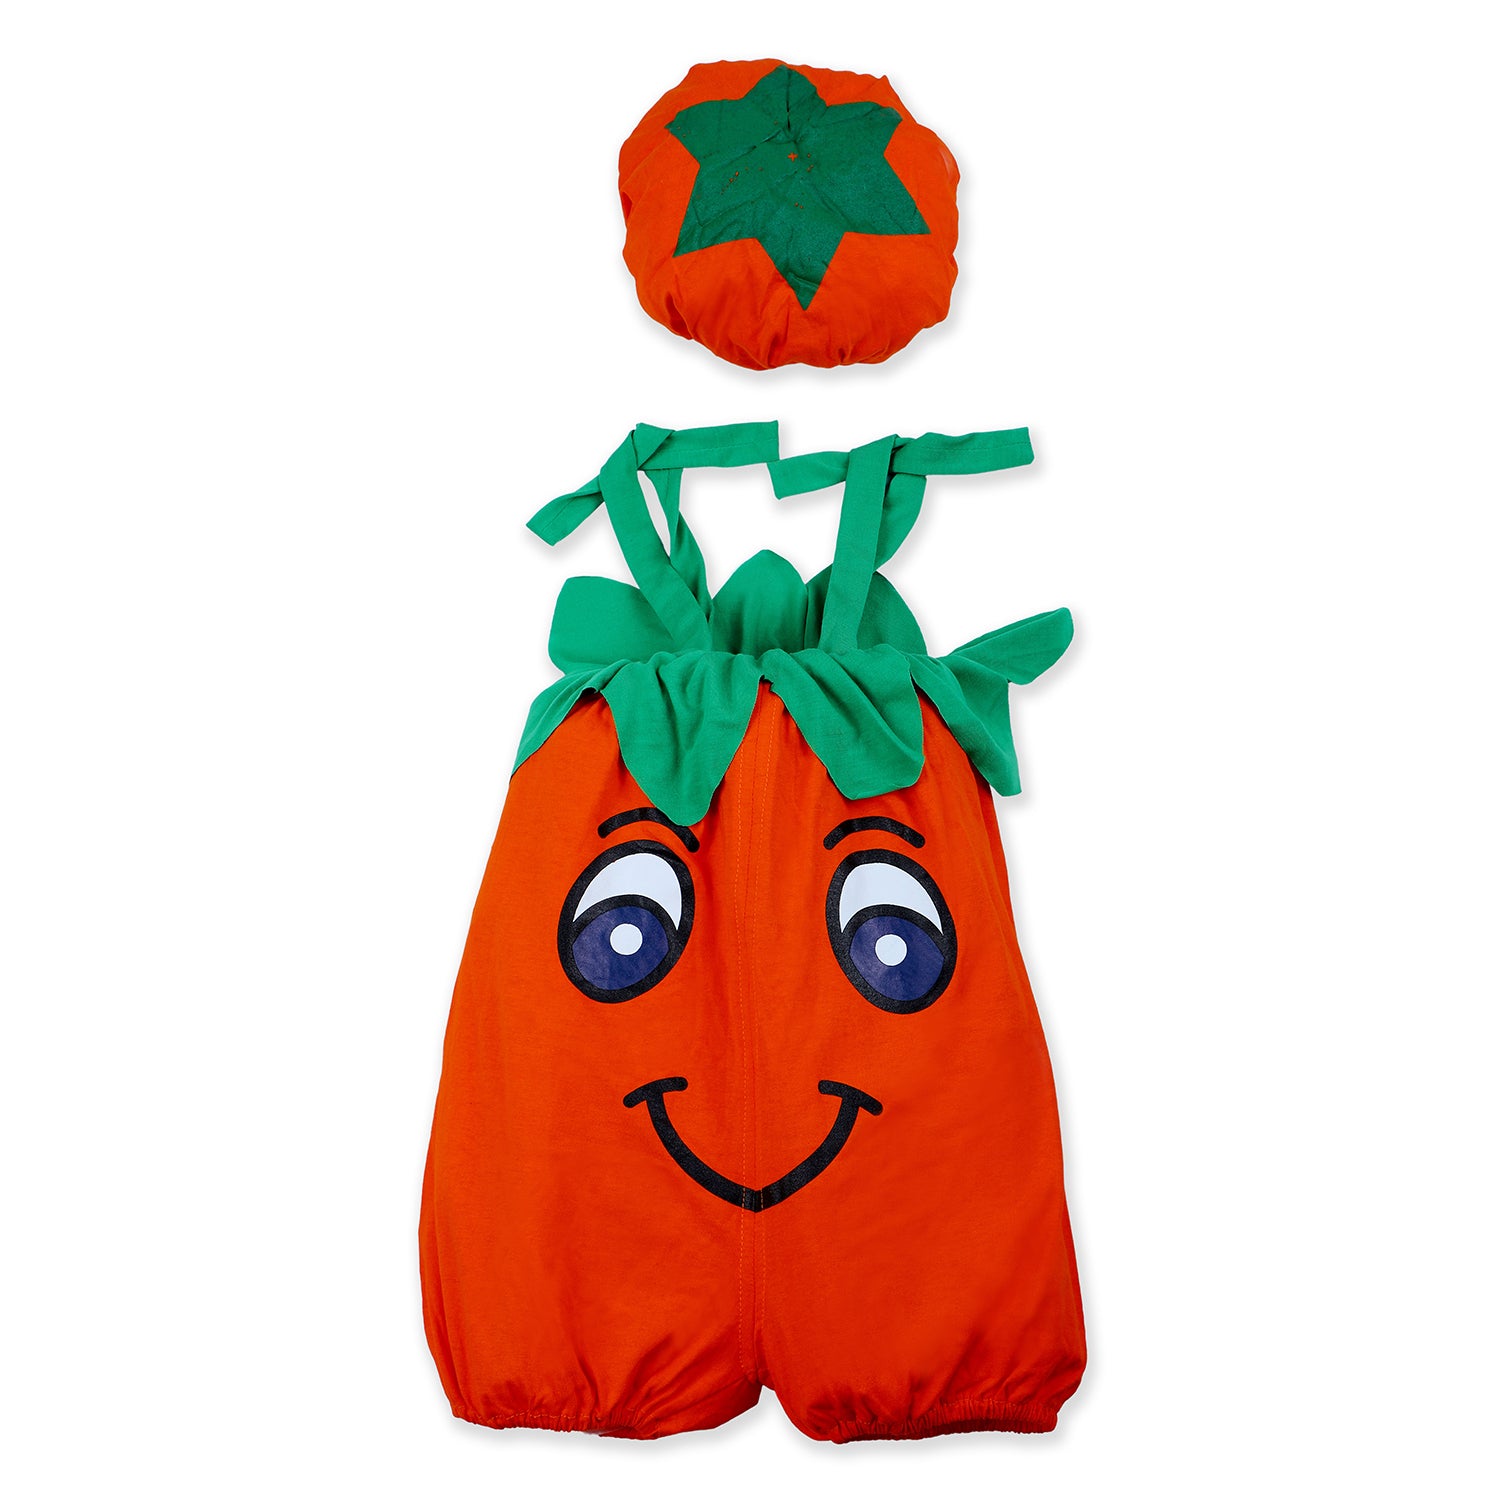 Baby Moo Orange Fruit Themed Costume 2pcs Cap And Fancy Dress - Orange - Baby Moo